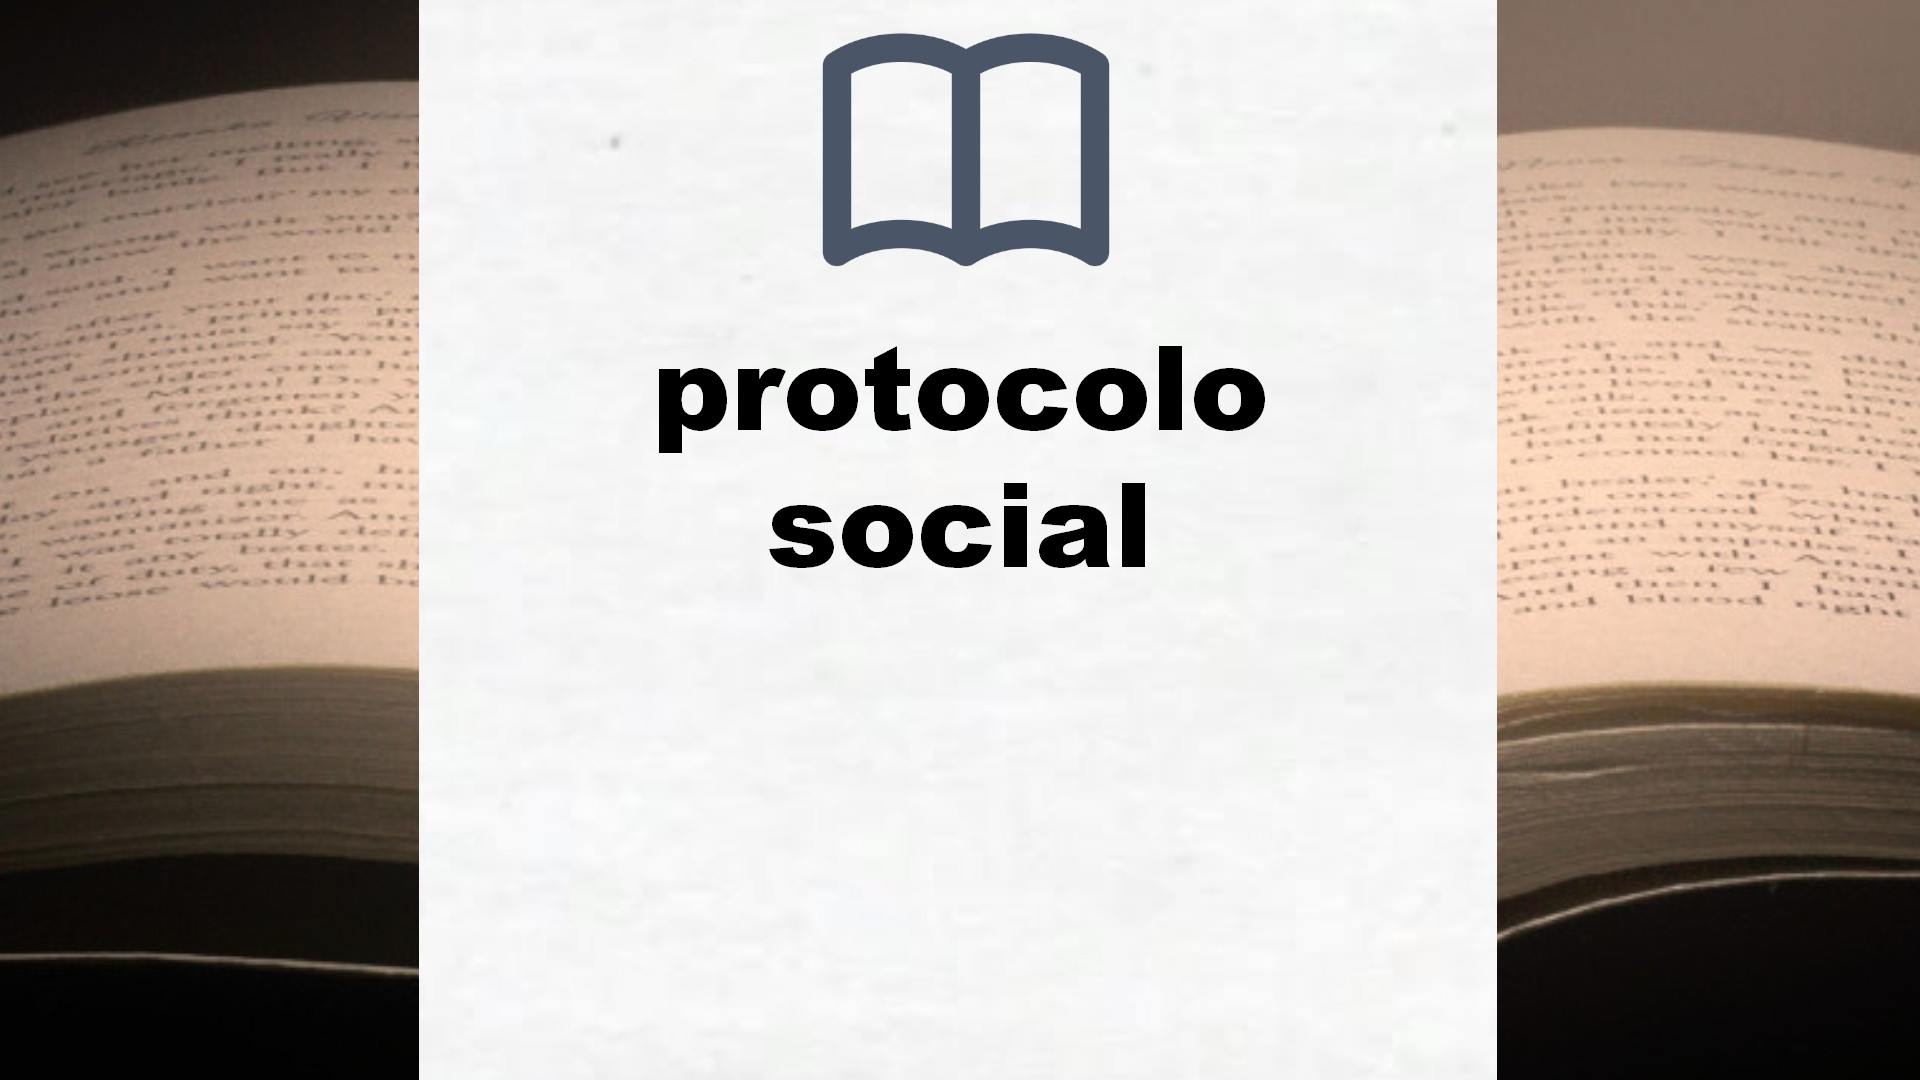 Libros sobre protocolo social